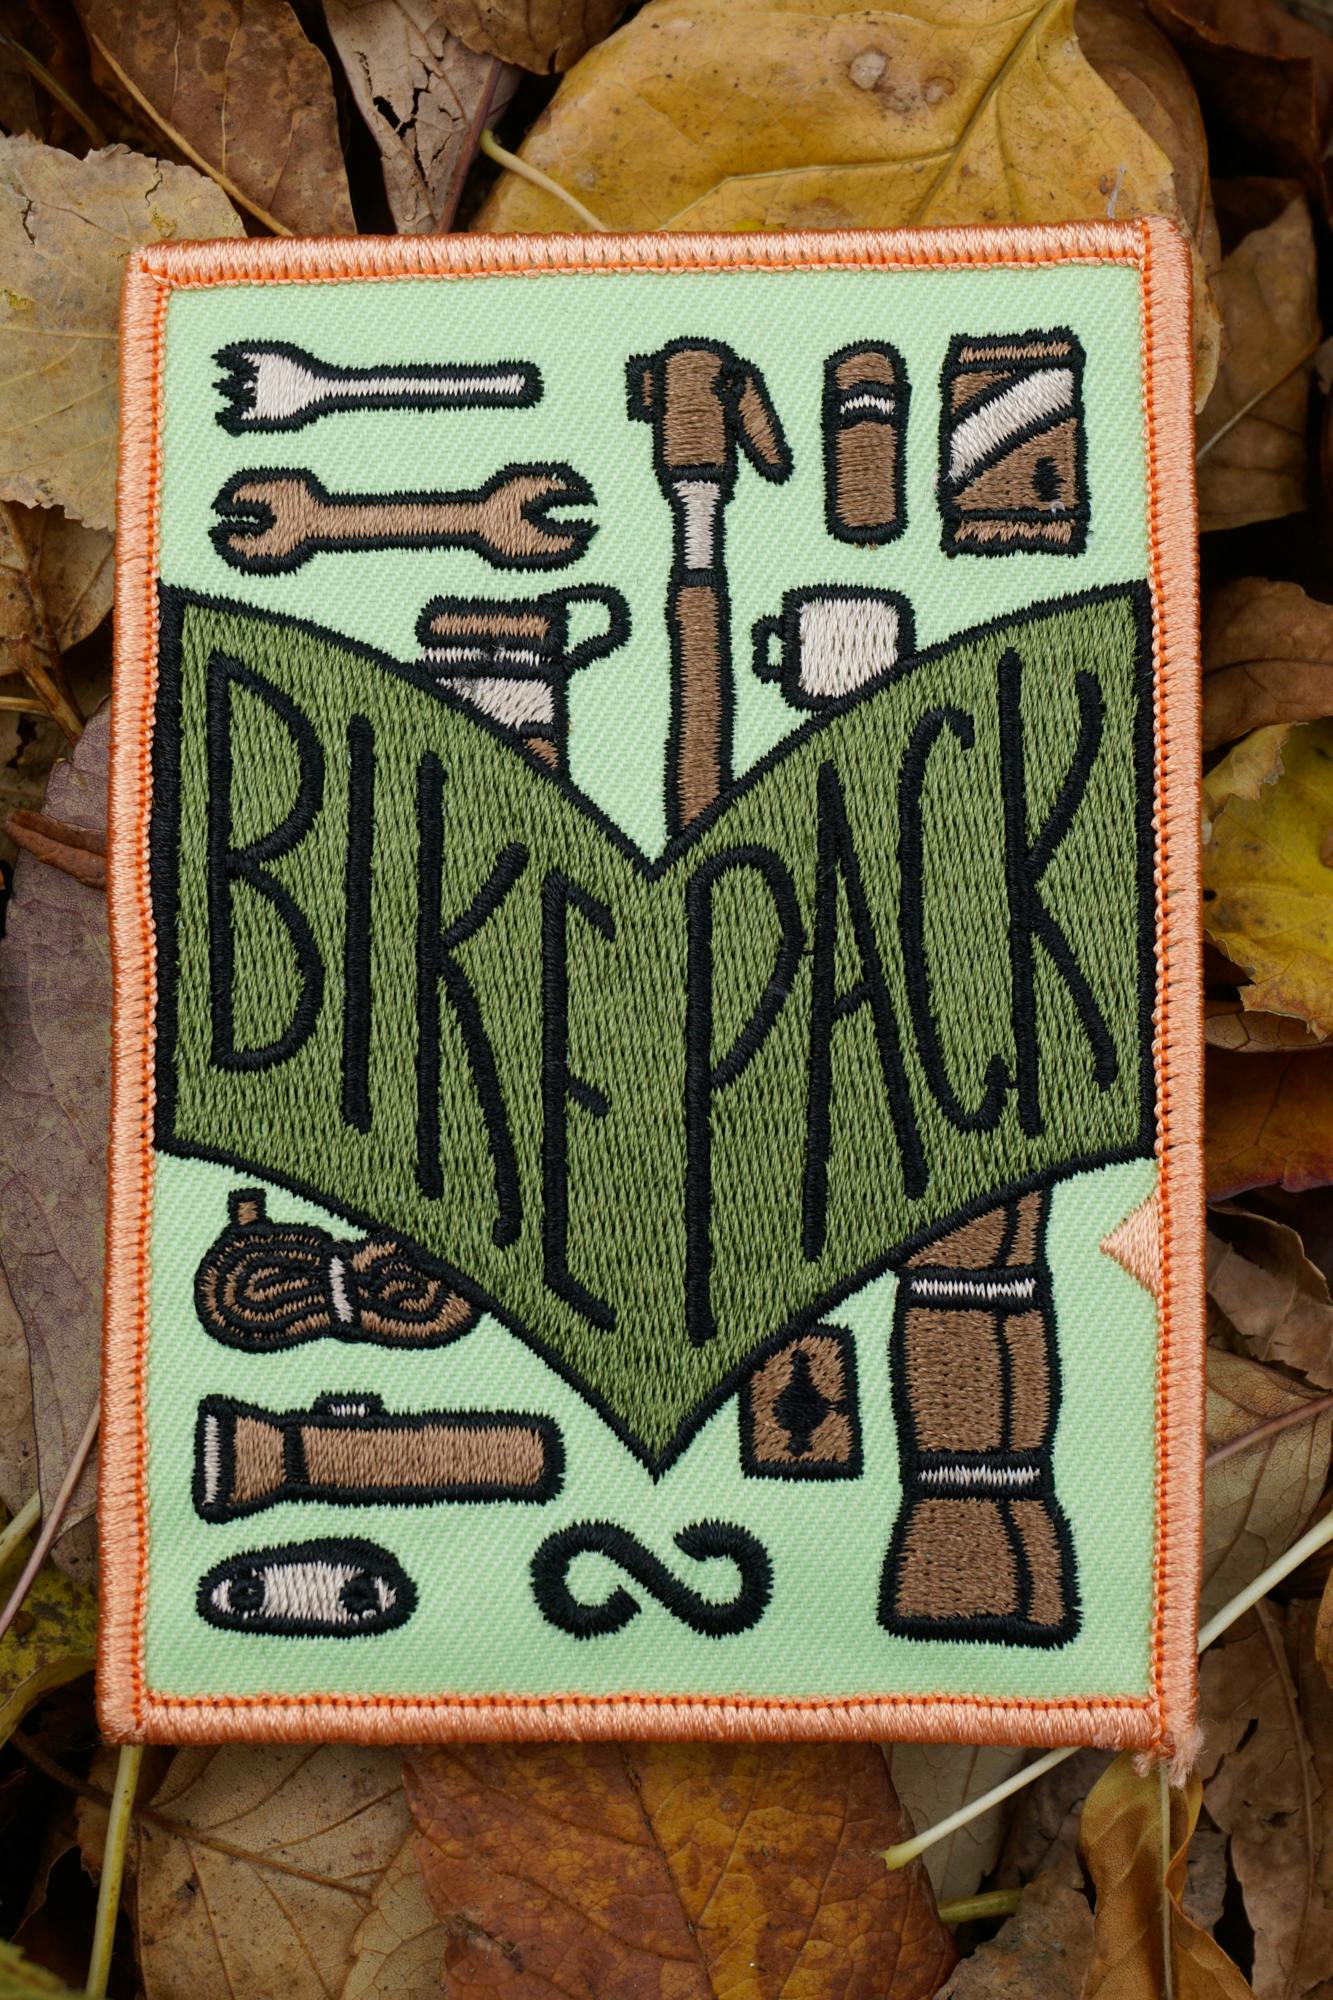 bikepack patch